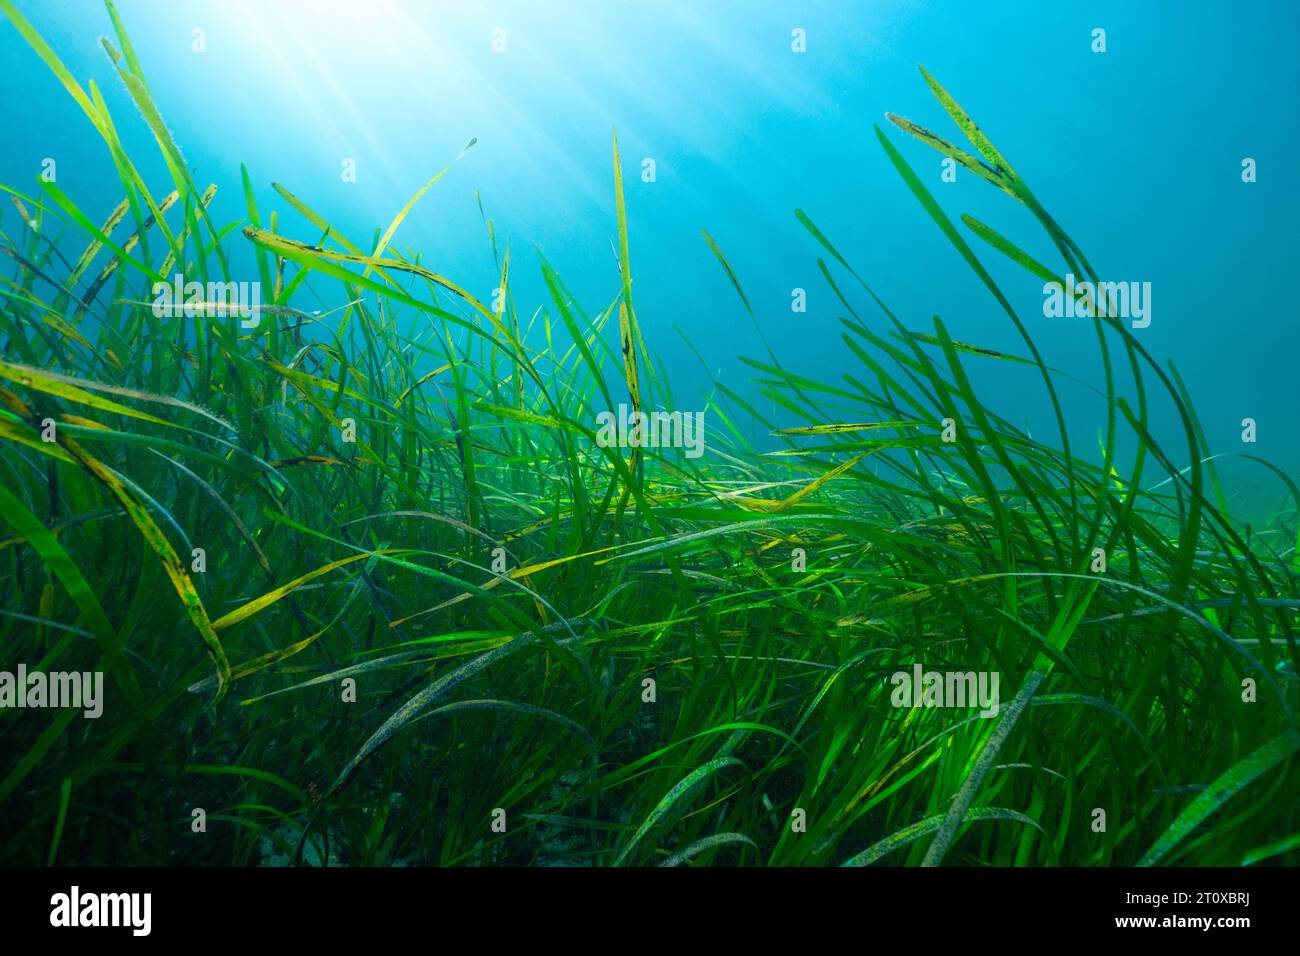 Herbier sous-marin avec la lumière du soleil dans l'océan Atlantique, herbier marin Zostera marina, scène naturelle, Espagne, Galice, Rias Baixas Banque D'Images